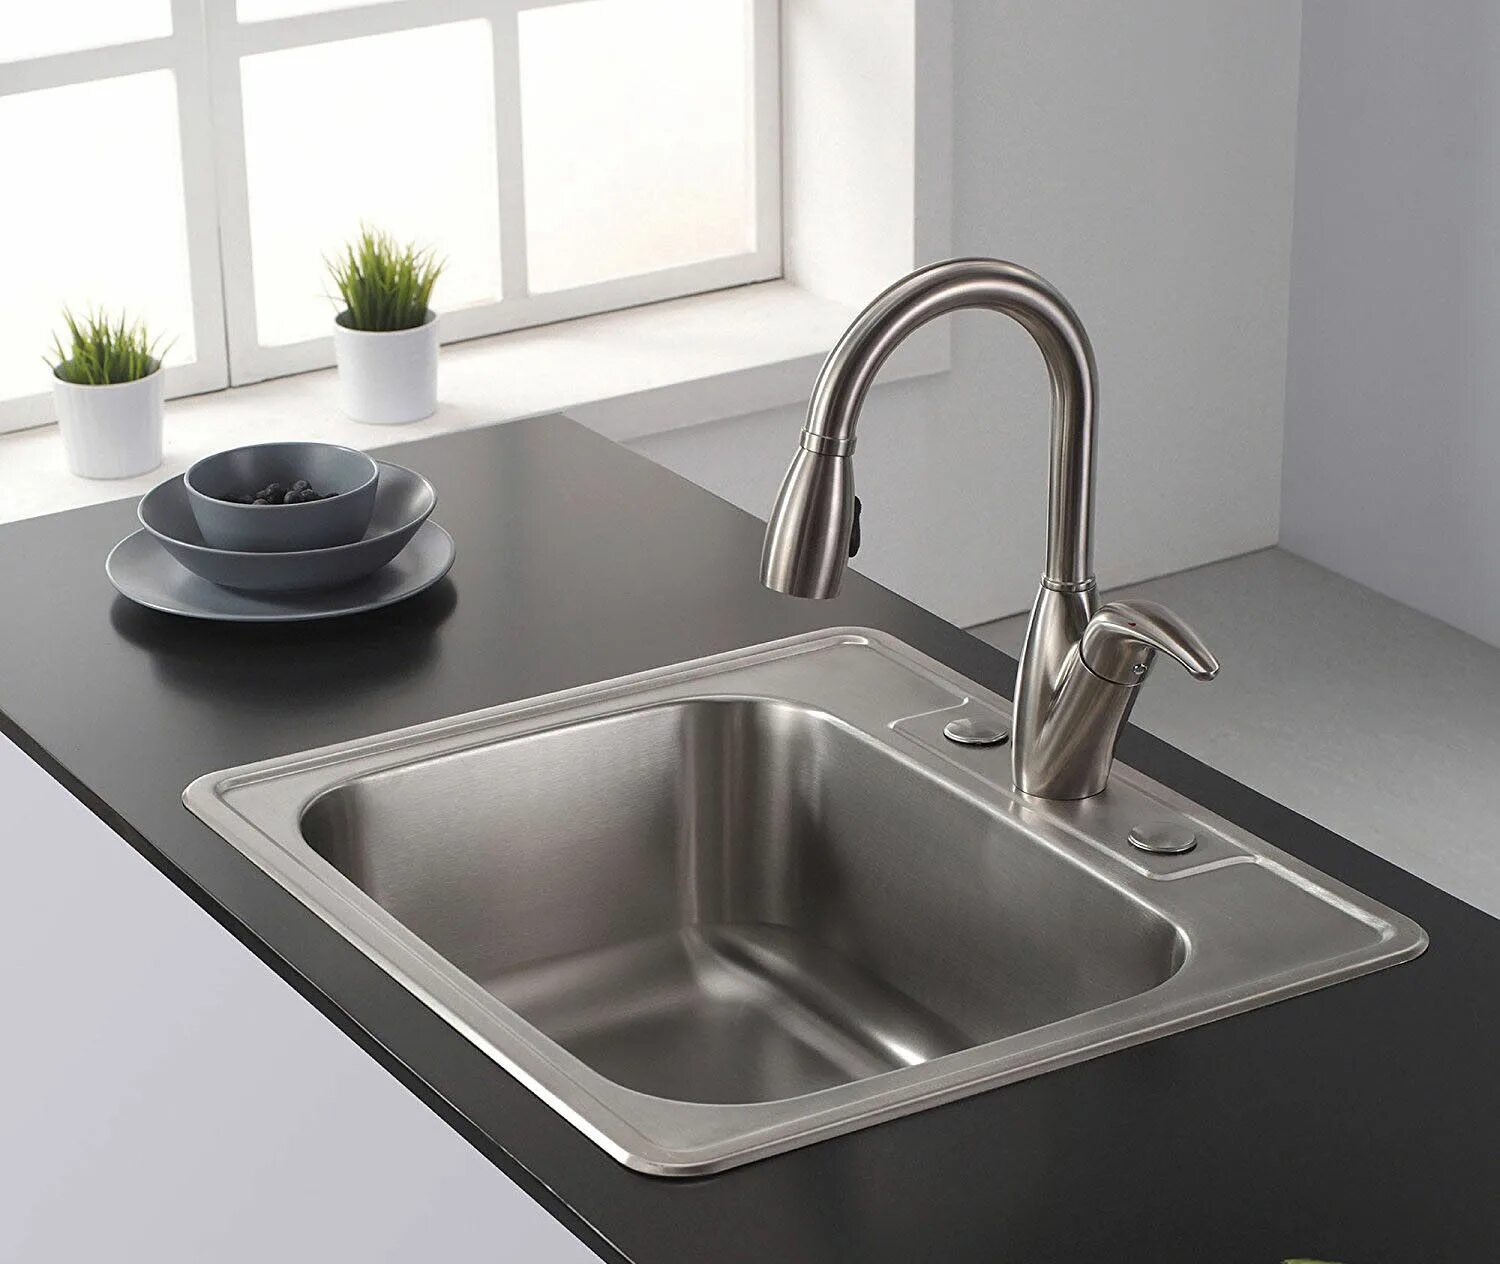 Какую лучше покупать мойку для кухни. Раковина Kitchen Sink кухонная. Мойка Blanco Lantos XL 6s-if Compact. Мойка Villeroy&Boch Single-Bowl Sink. Мойка квадратная для кухни.